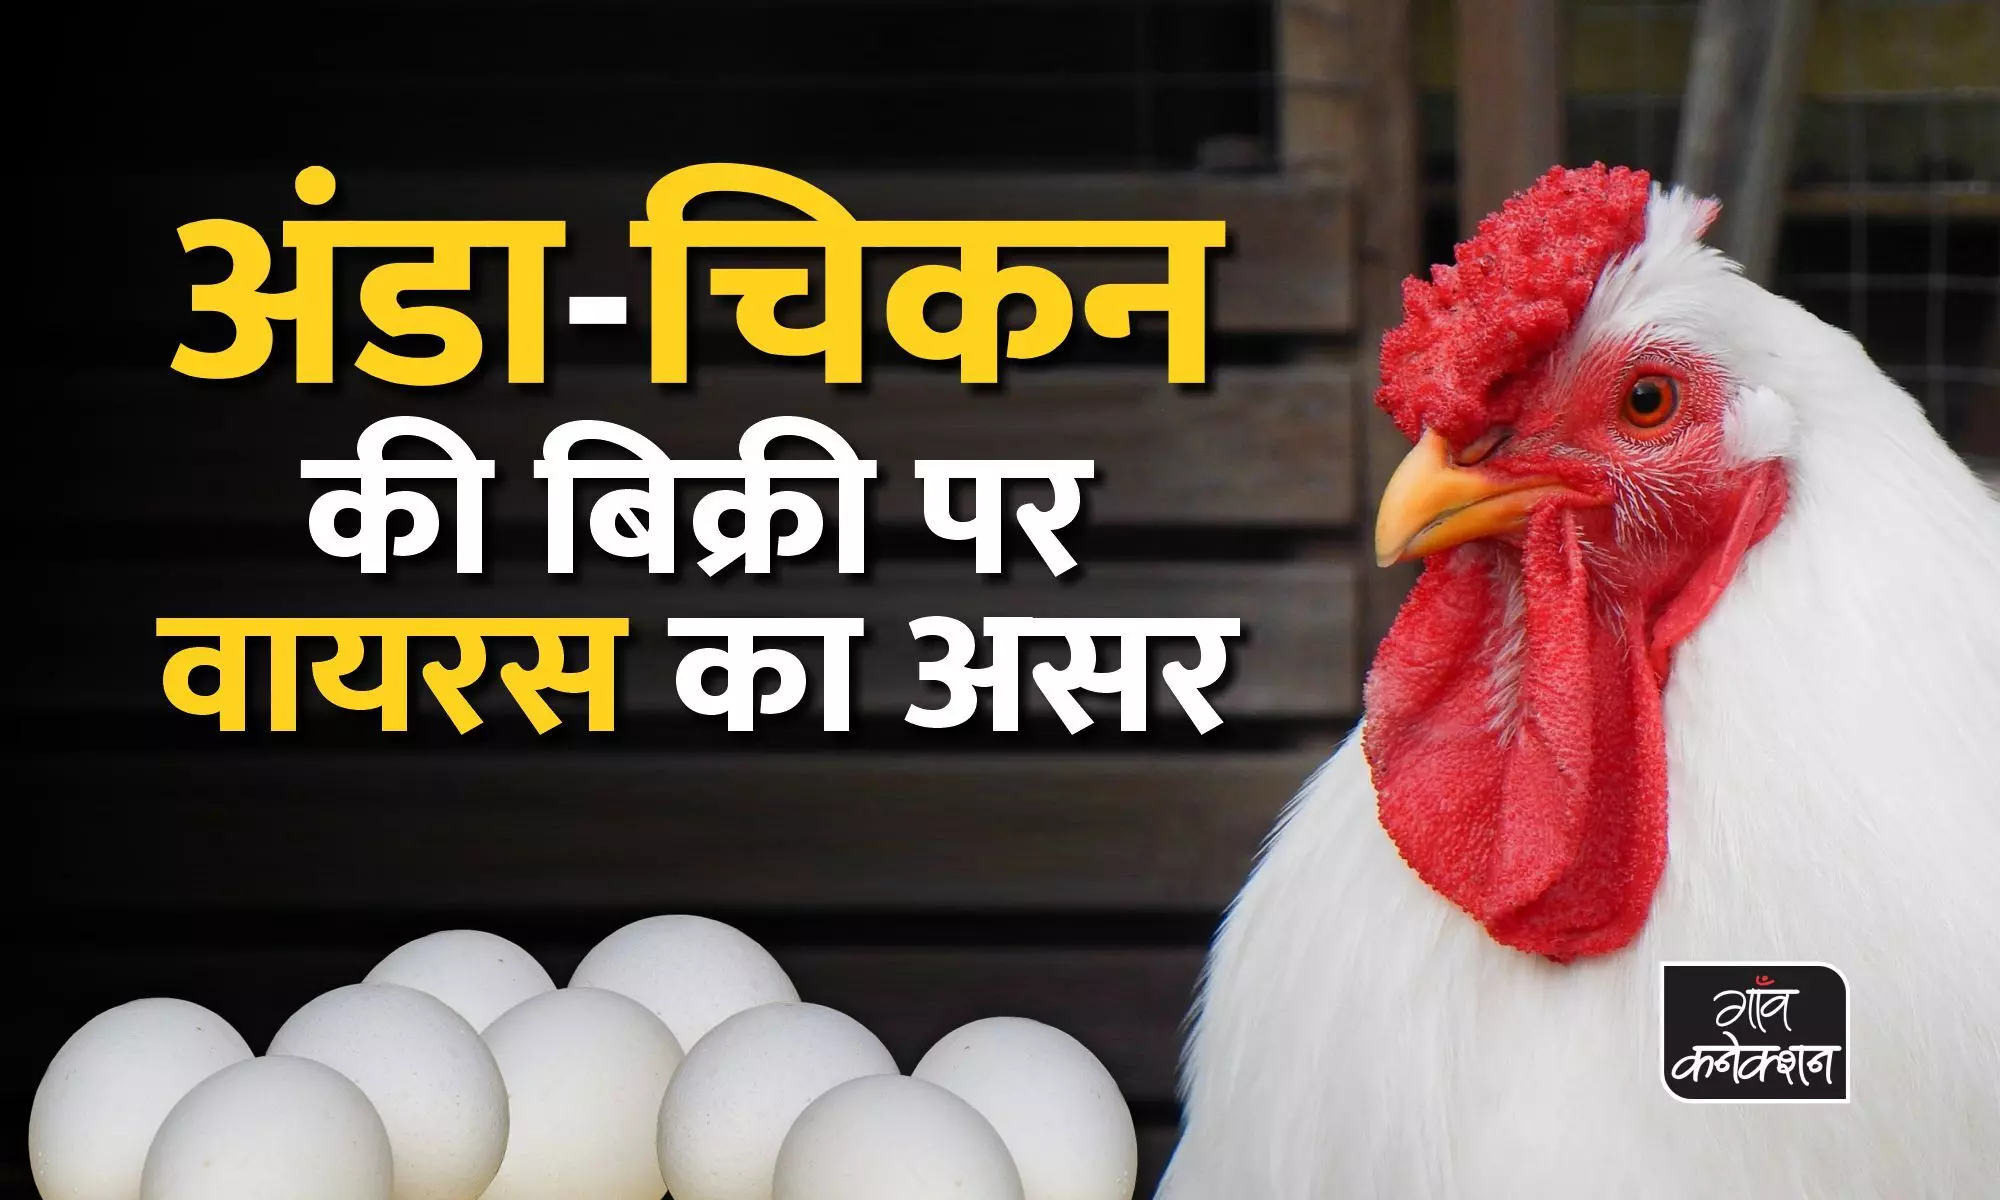 कोरोना वायरस के डर से लोगों ने कम किया अंडा-चिकन खाना, दस से पचास रुपए किलो तक में बिक रहा चिकन